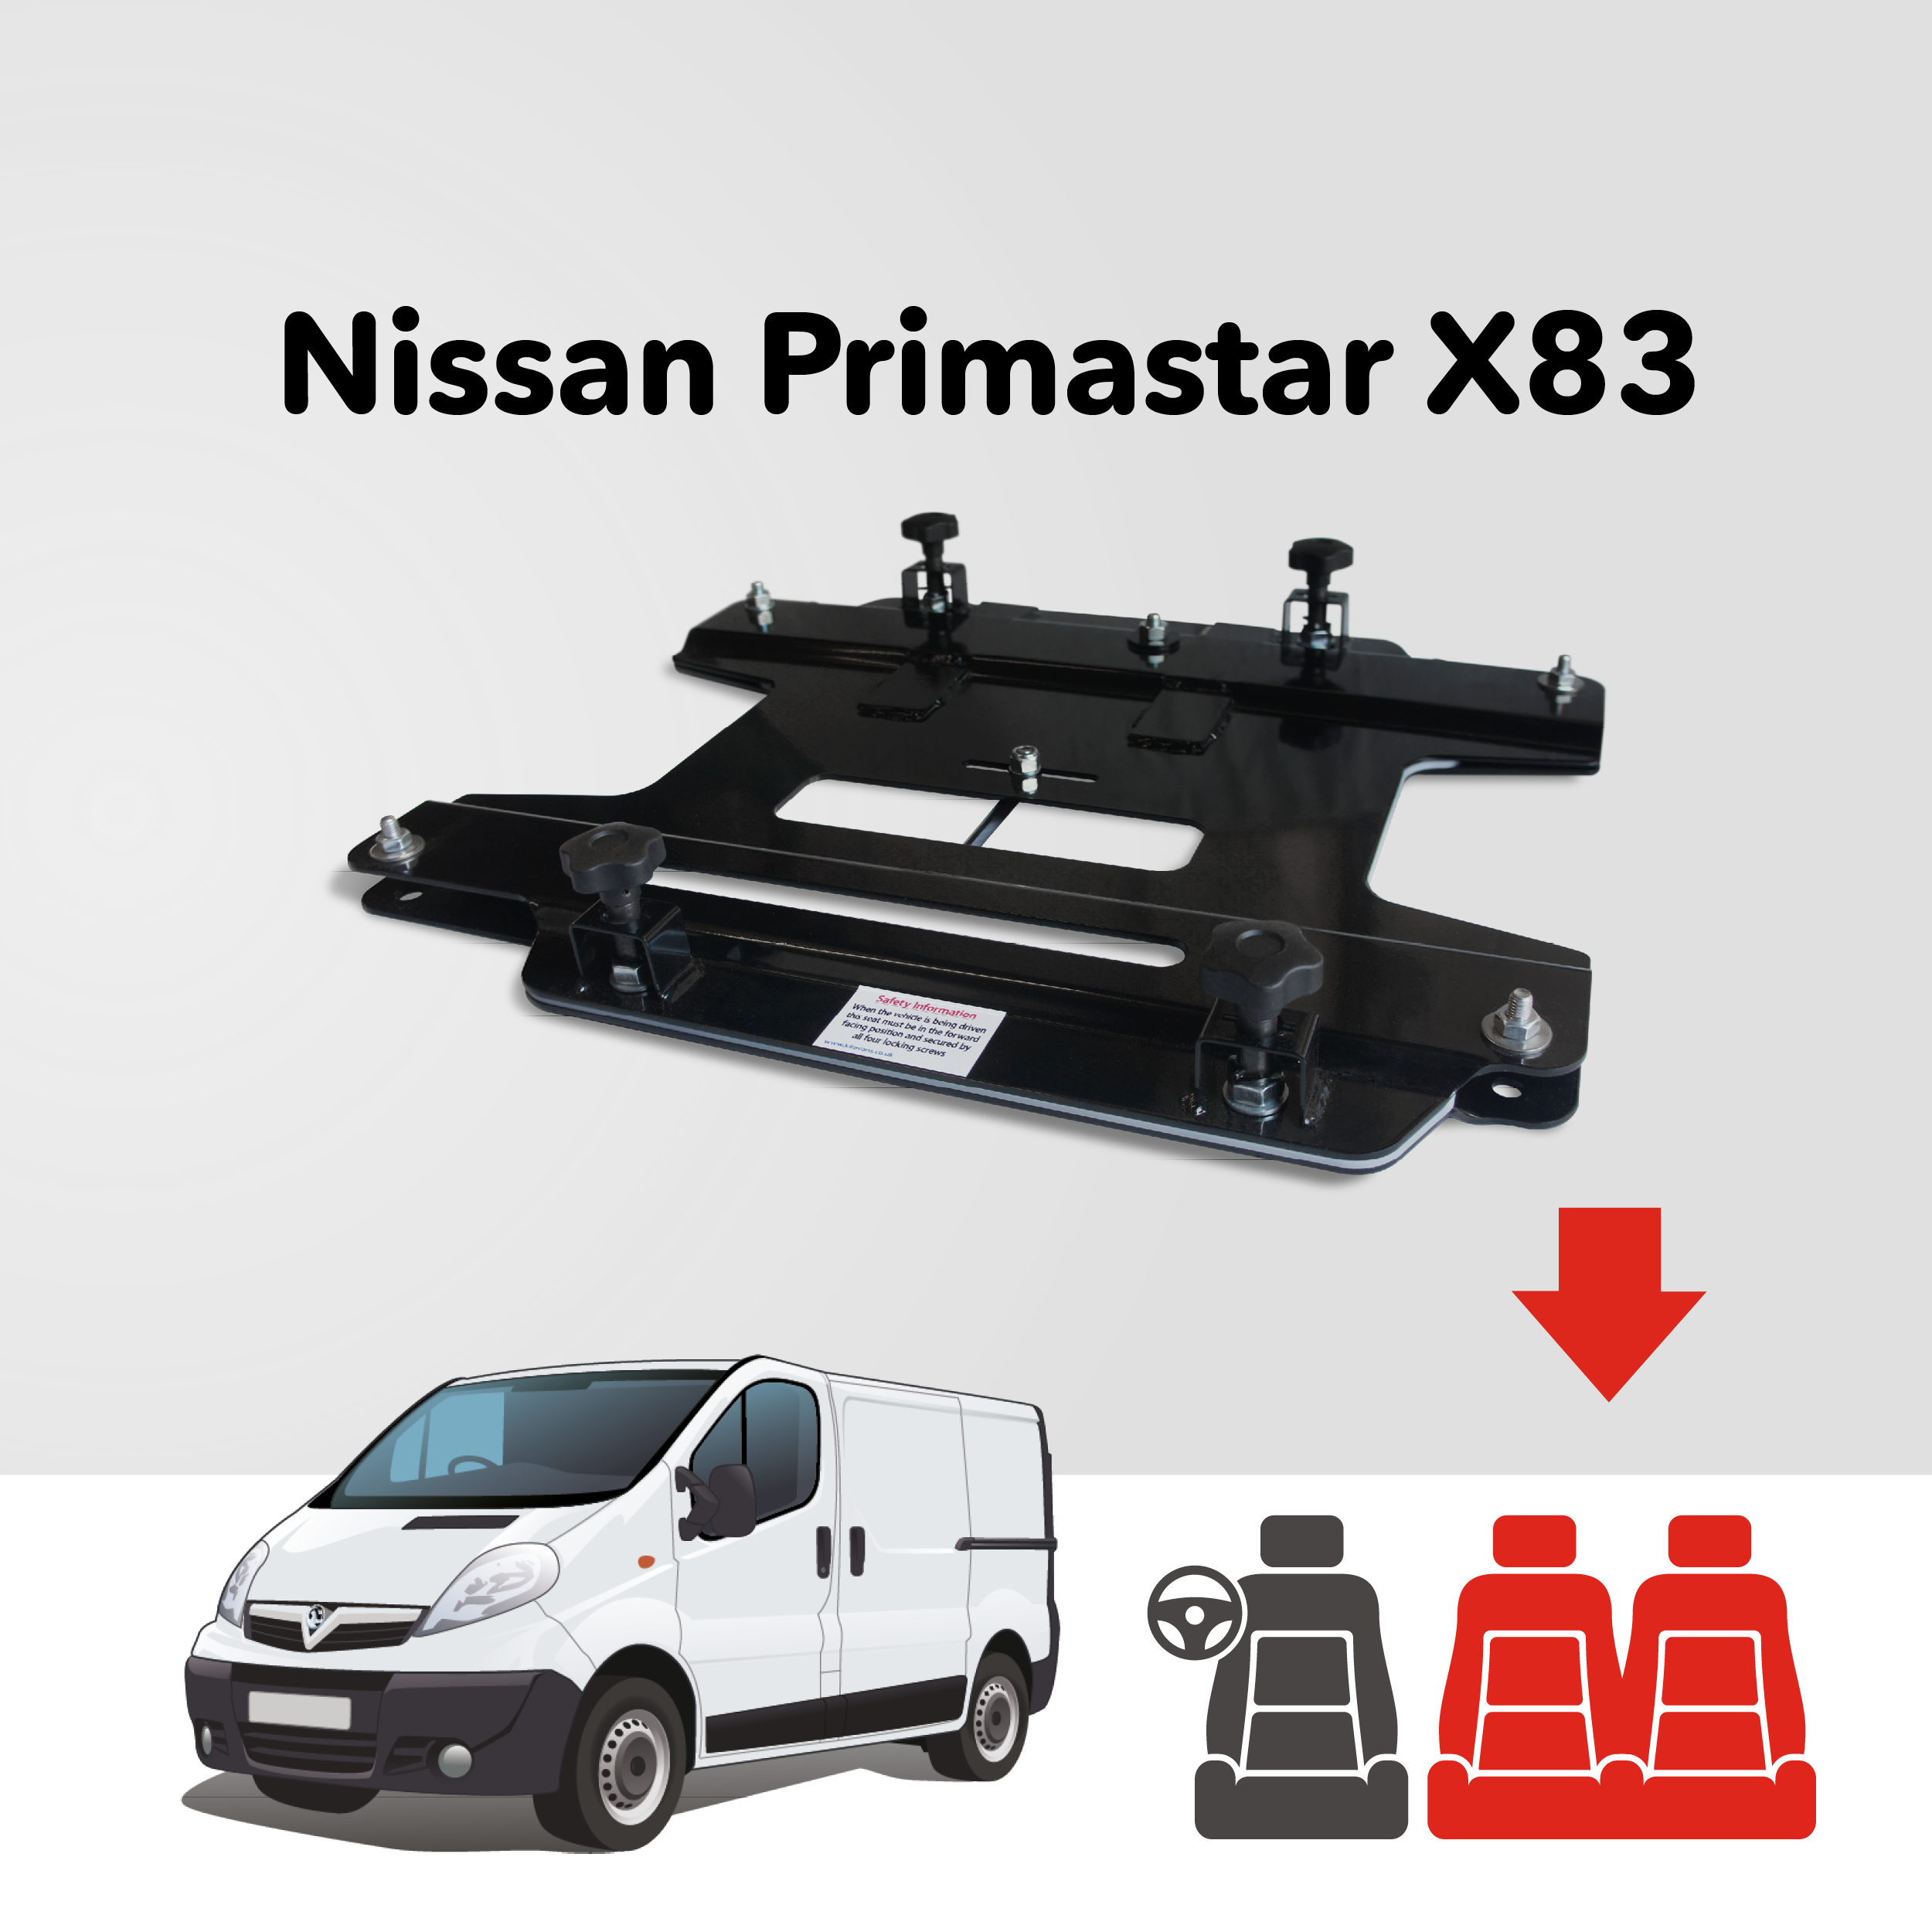 Base tournante double banquette Kiravans - Nissan Primastar 2001-2014 2.Gen (UK & IRL - CONDUITE À DROITE)